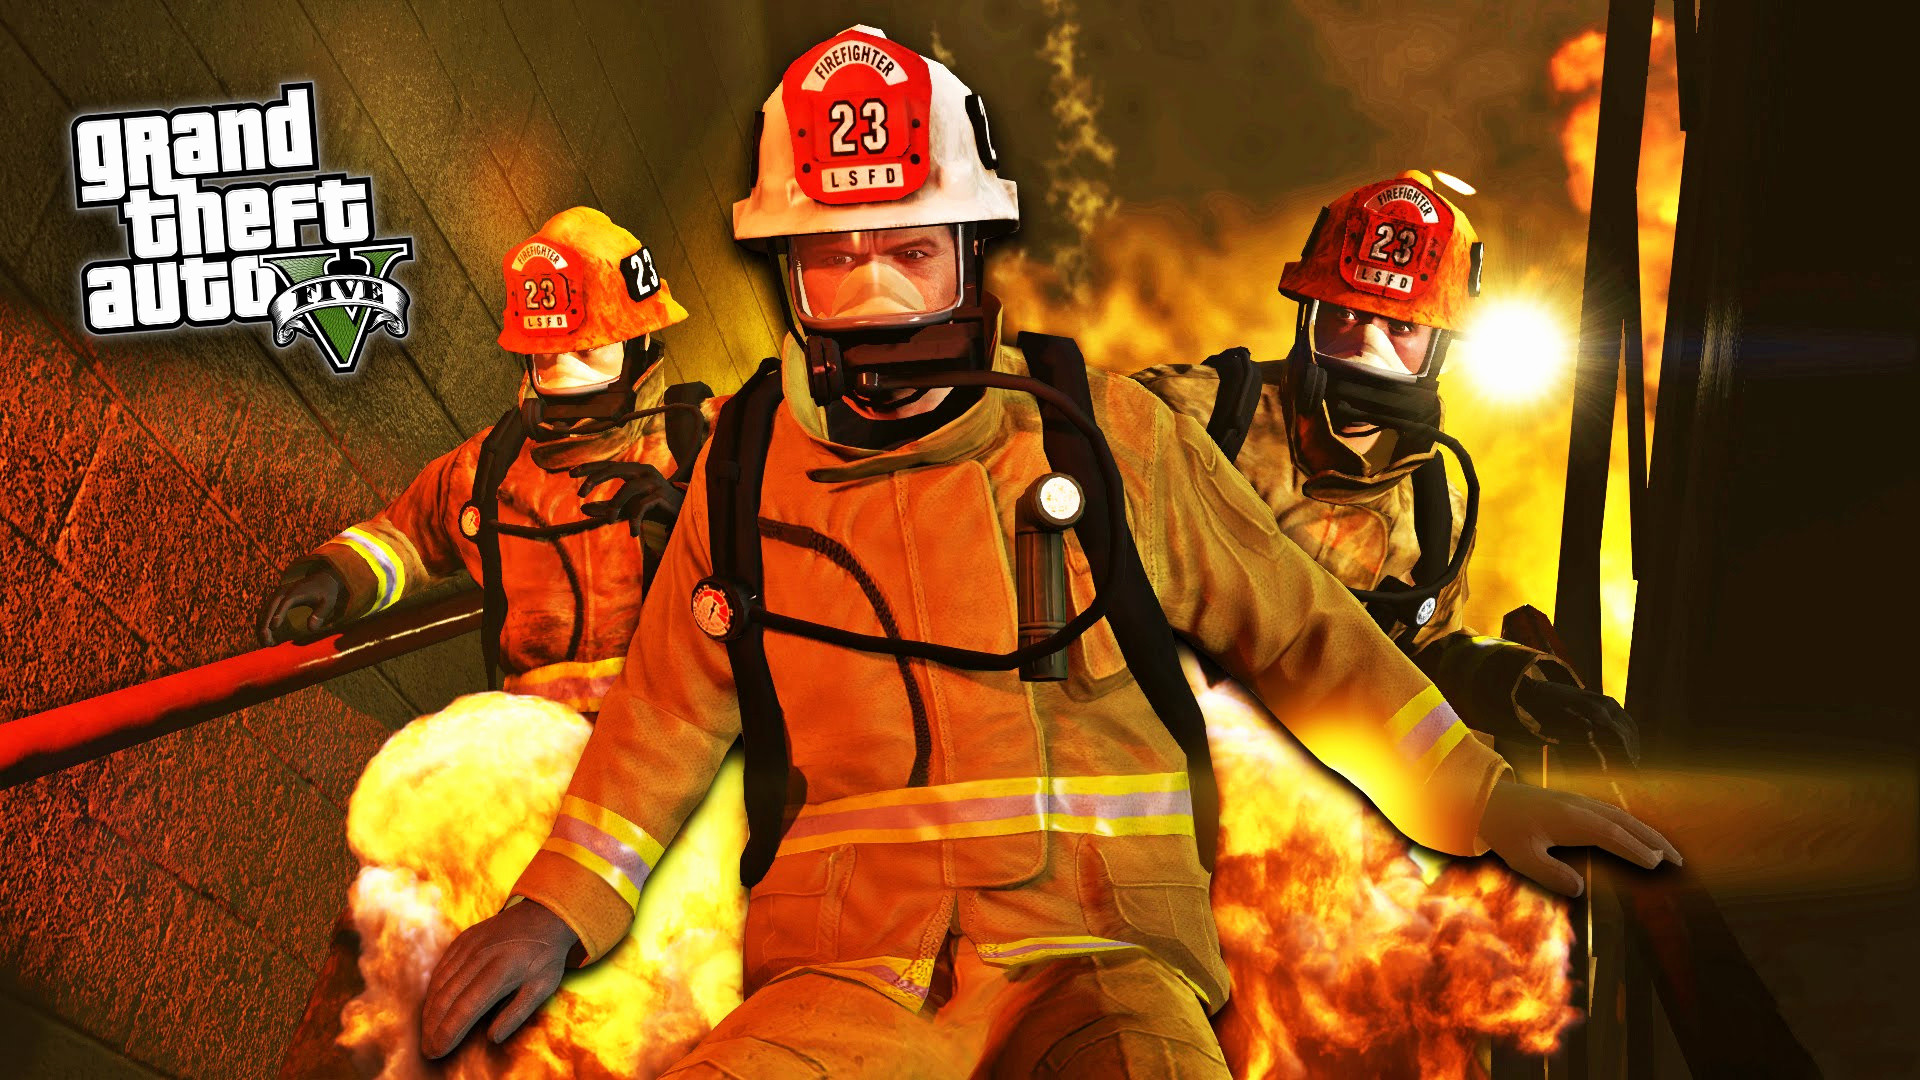 firefighter wallpaper,firefighter,rescuer,fire department,emergency service,fire